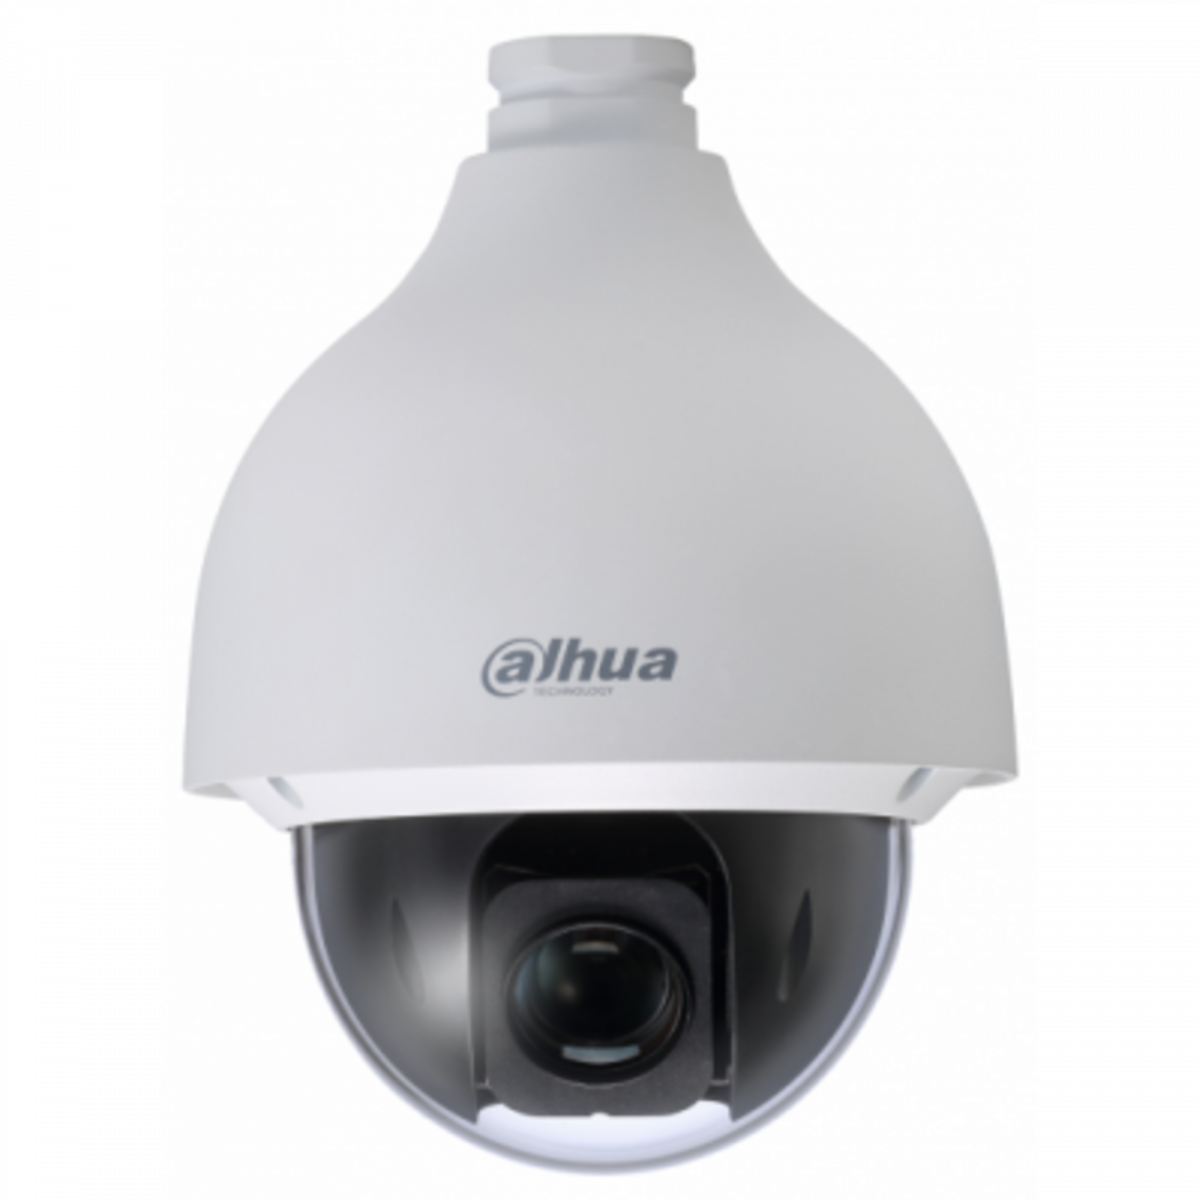 IP камера Dahua DH-SD50230T-HN скоростная купольная поворотная EcoSavy 2 2Мп с 30x оптическим увеличением ,PoE+ (б/у, после СЦ)